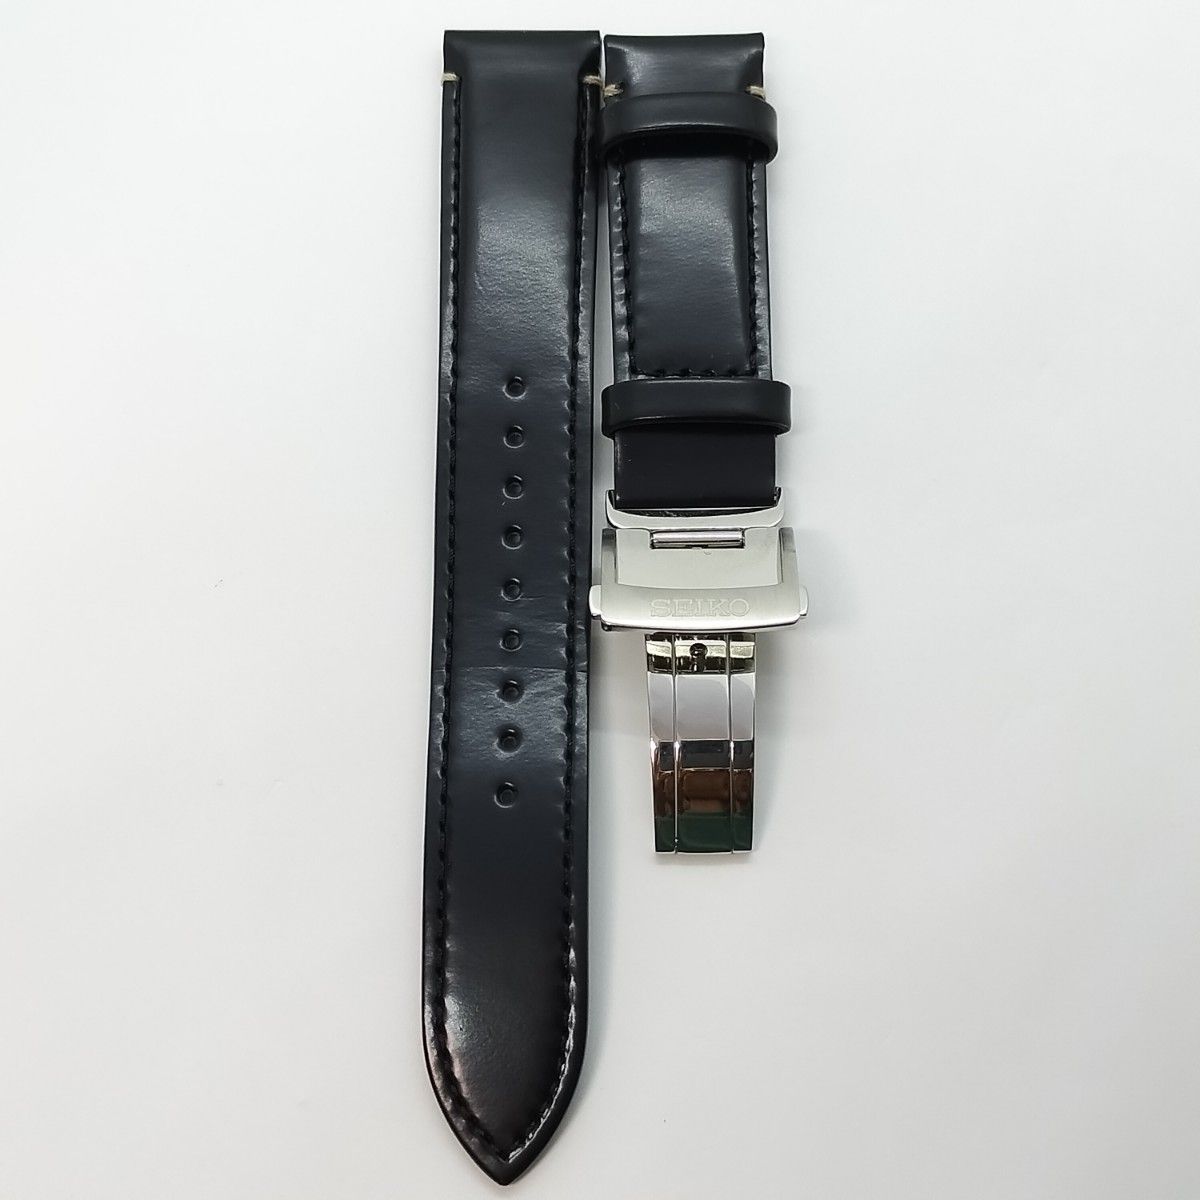 【良品】SEIKOセイコーPROSPEXプロスペックスSBDC149 箱保替えベルト付きメンズ腕時計